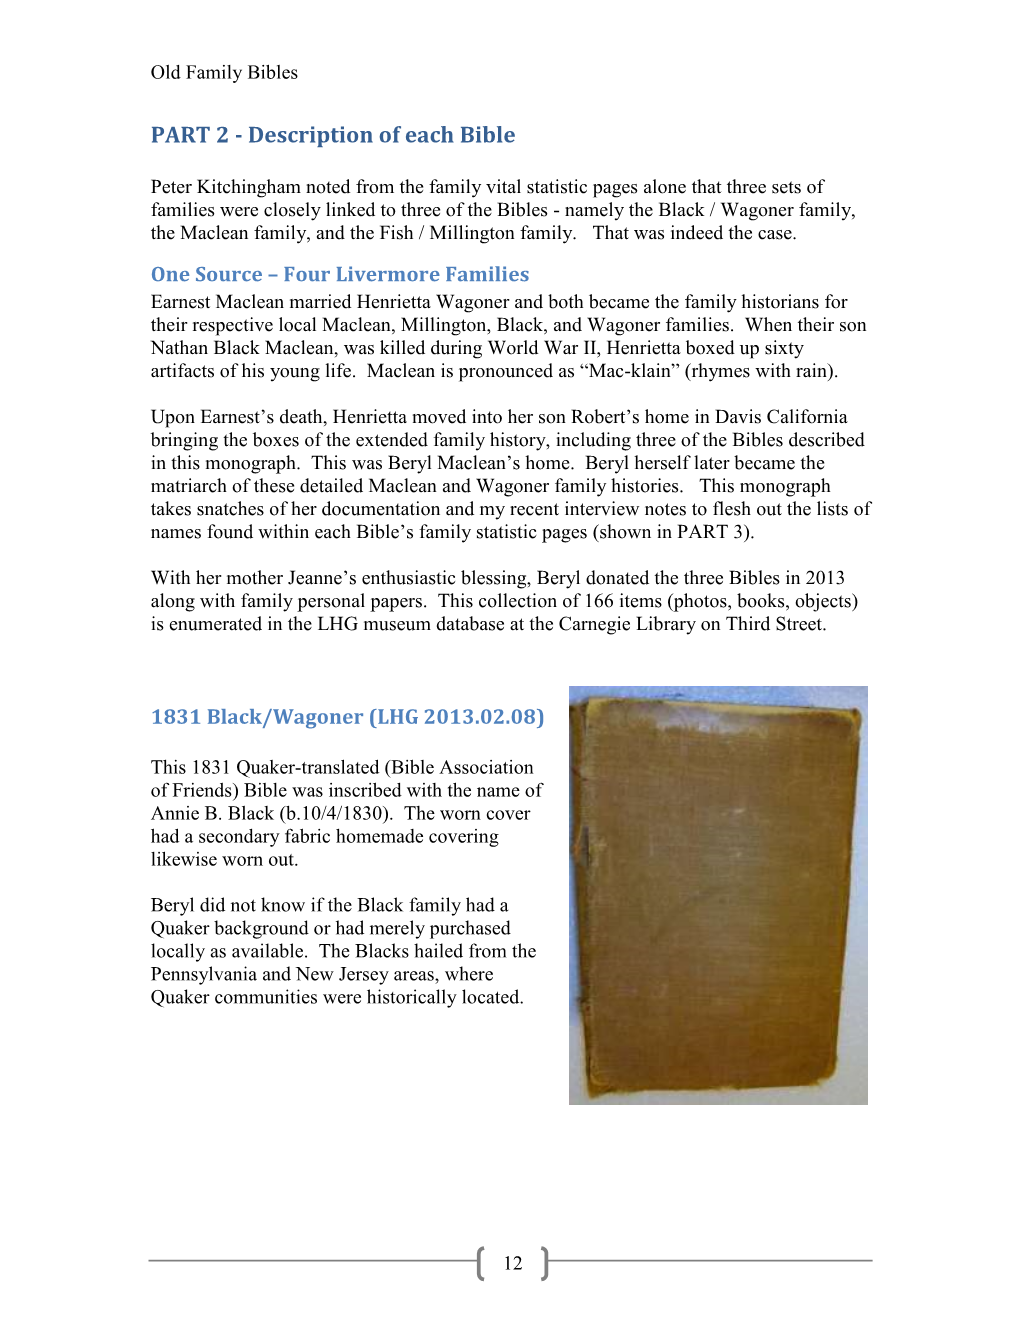 Description of Each Bible